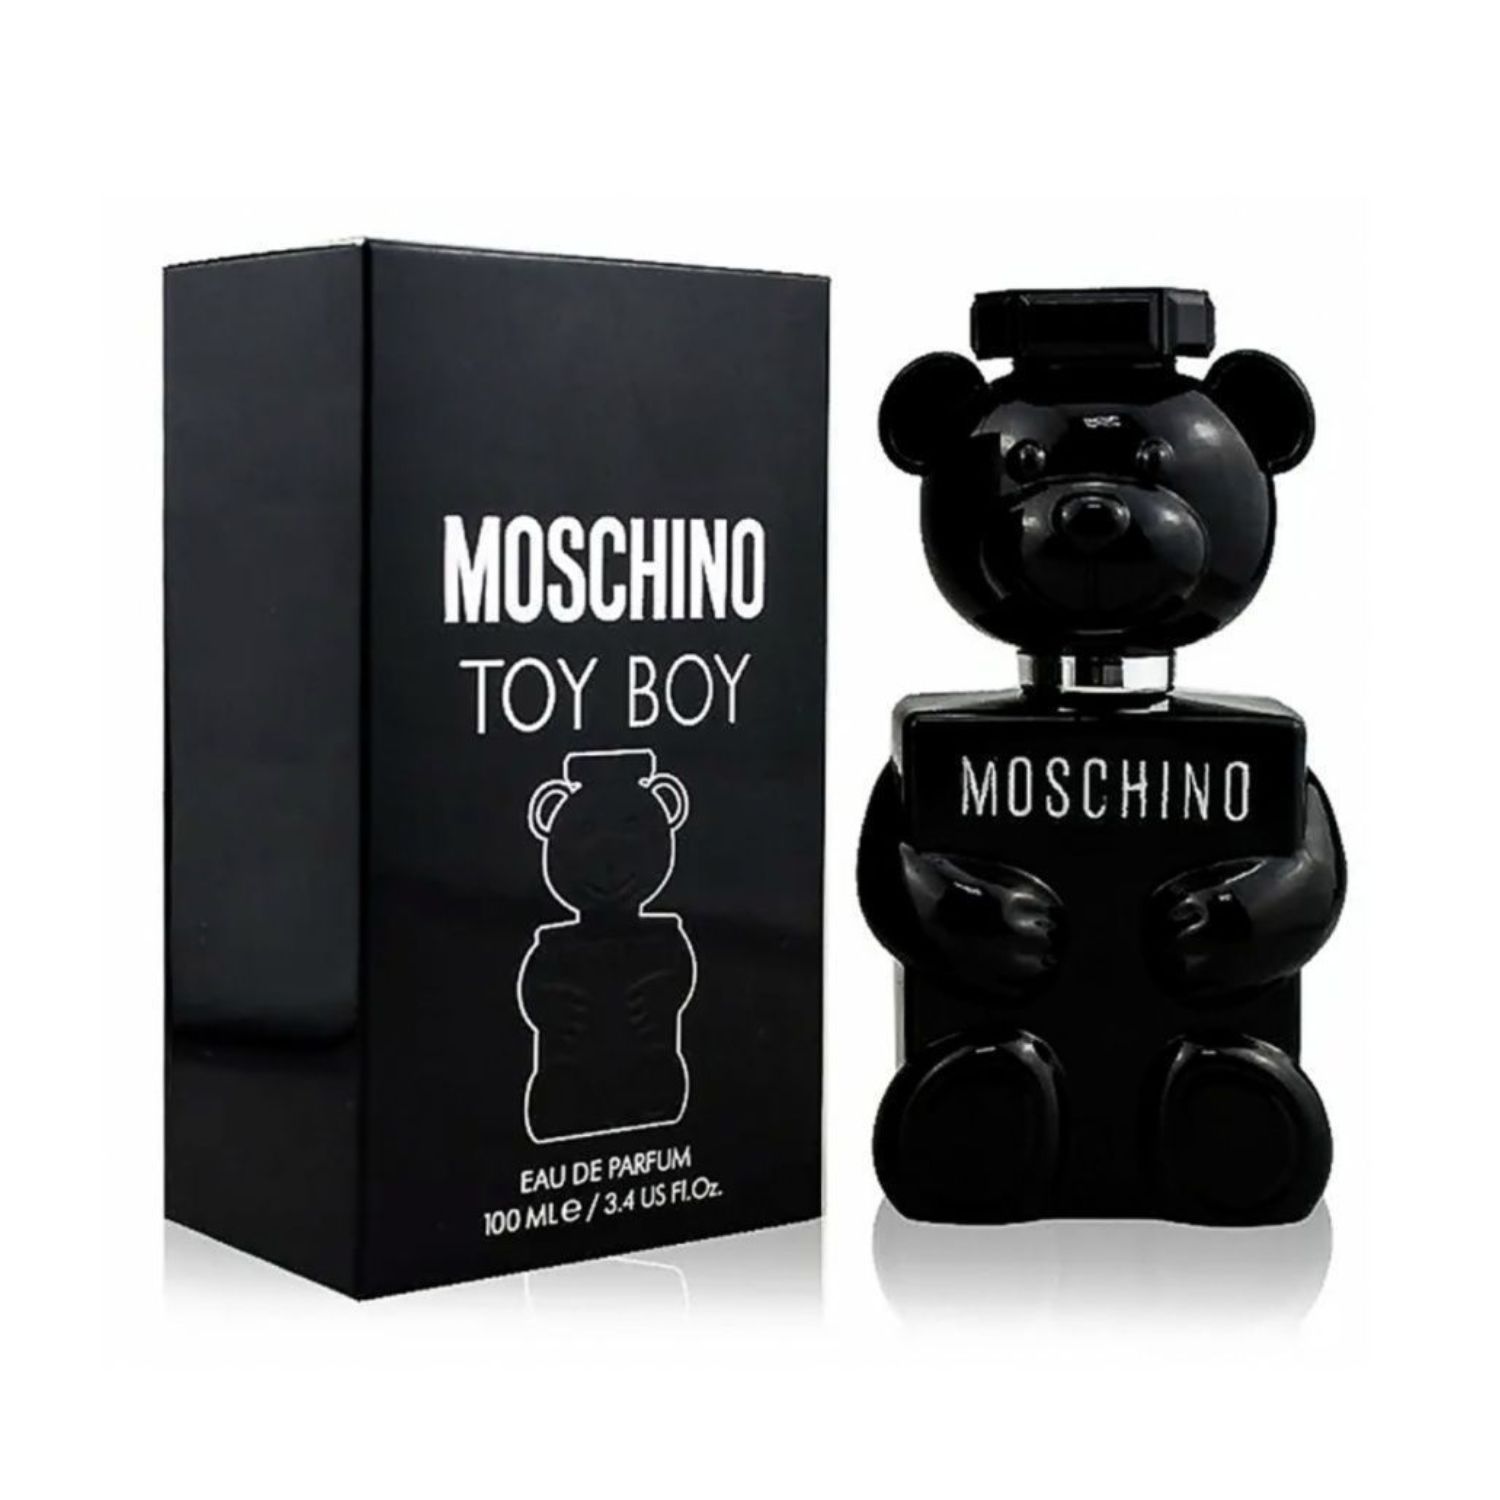 Moschino Toy boy Eau de Parfum. Moschino Toy boy Eau de Parfum 100 ml. Moschino Toy boy 100ml EDP. Moschino Toy boy 2. Духи москино той бой